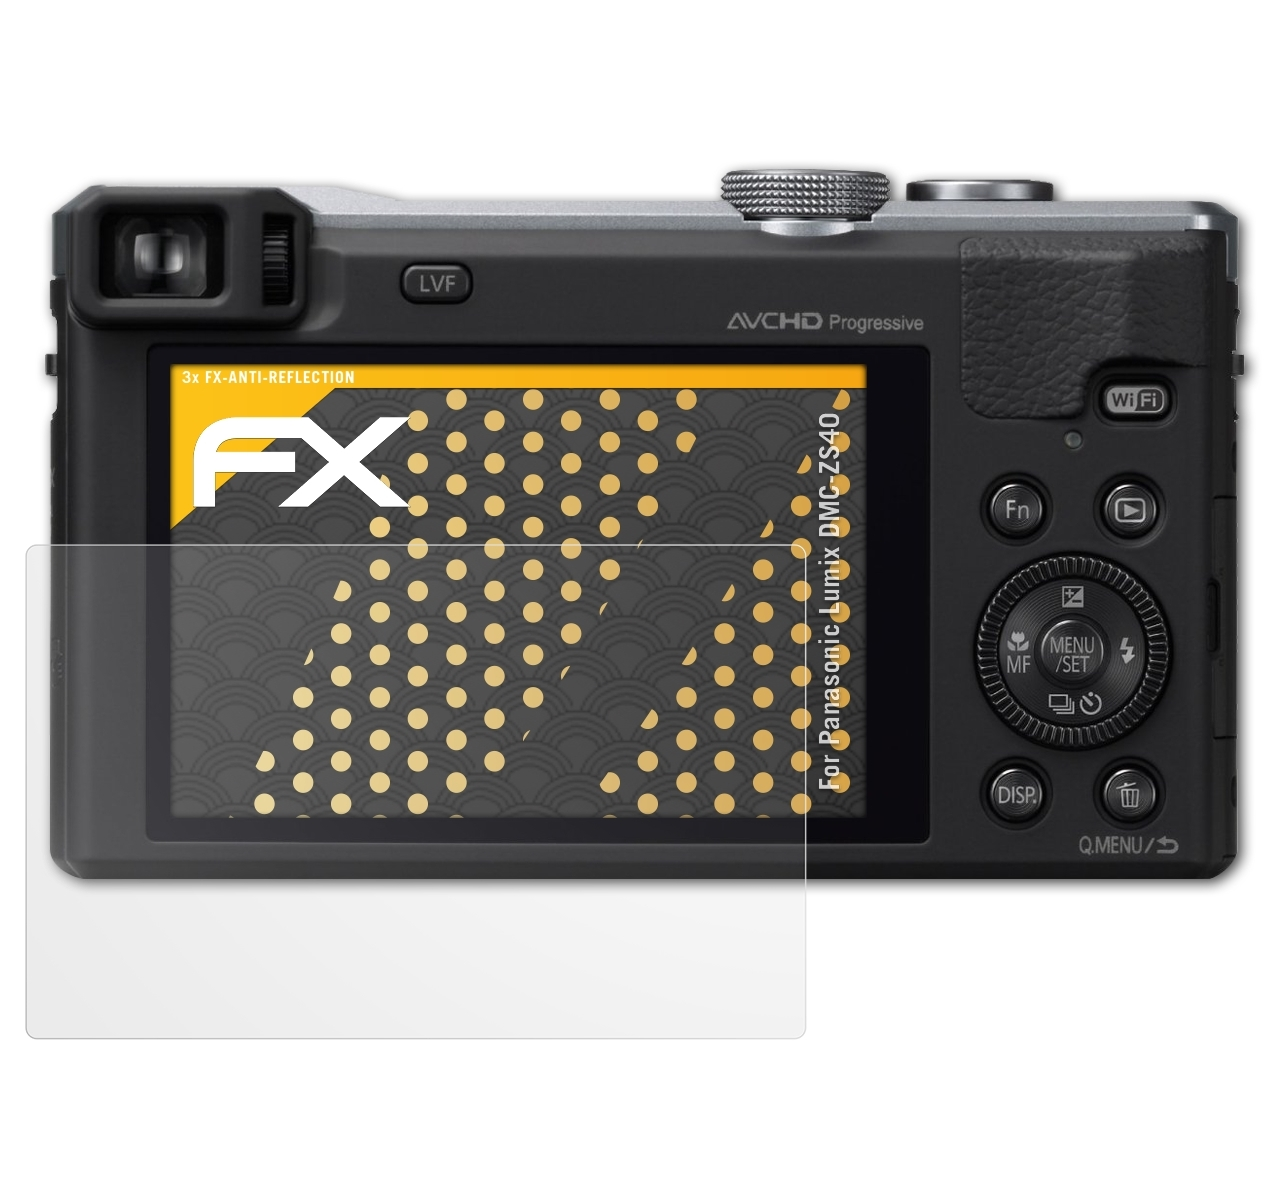 Lumix Panasonic FX-Antireflex DMC-ZS40) 3x Displayschutz(für ATFOLIX